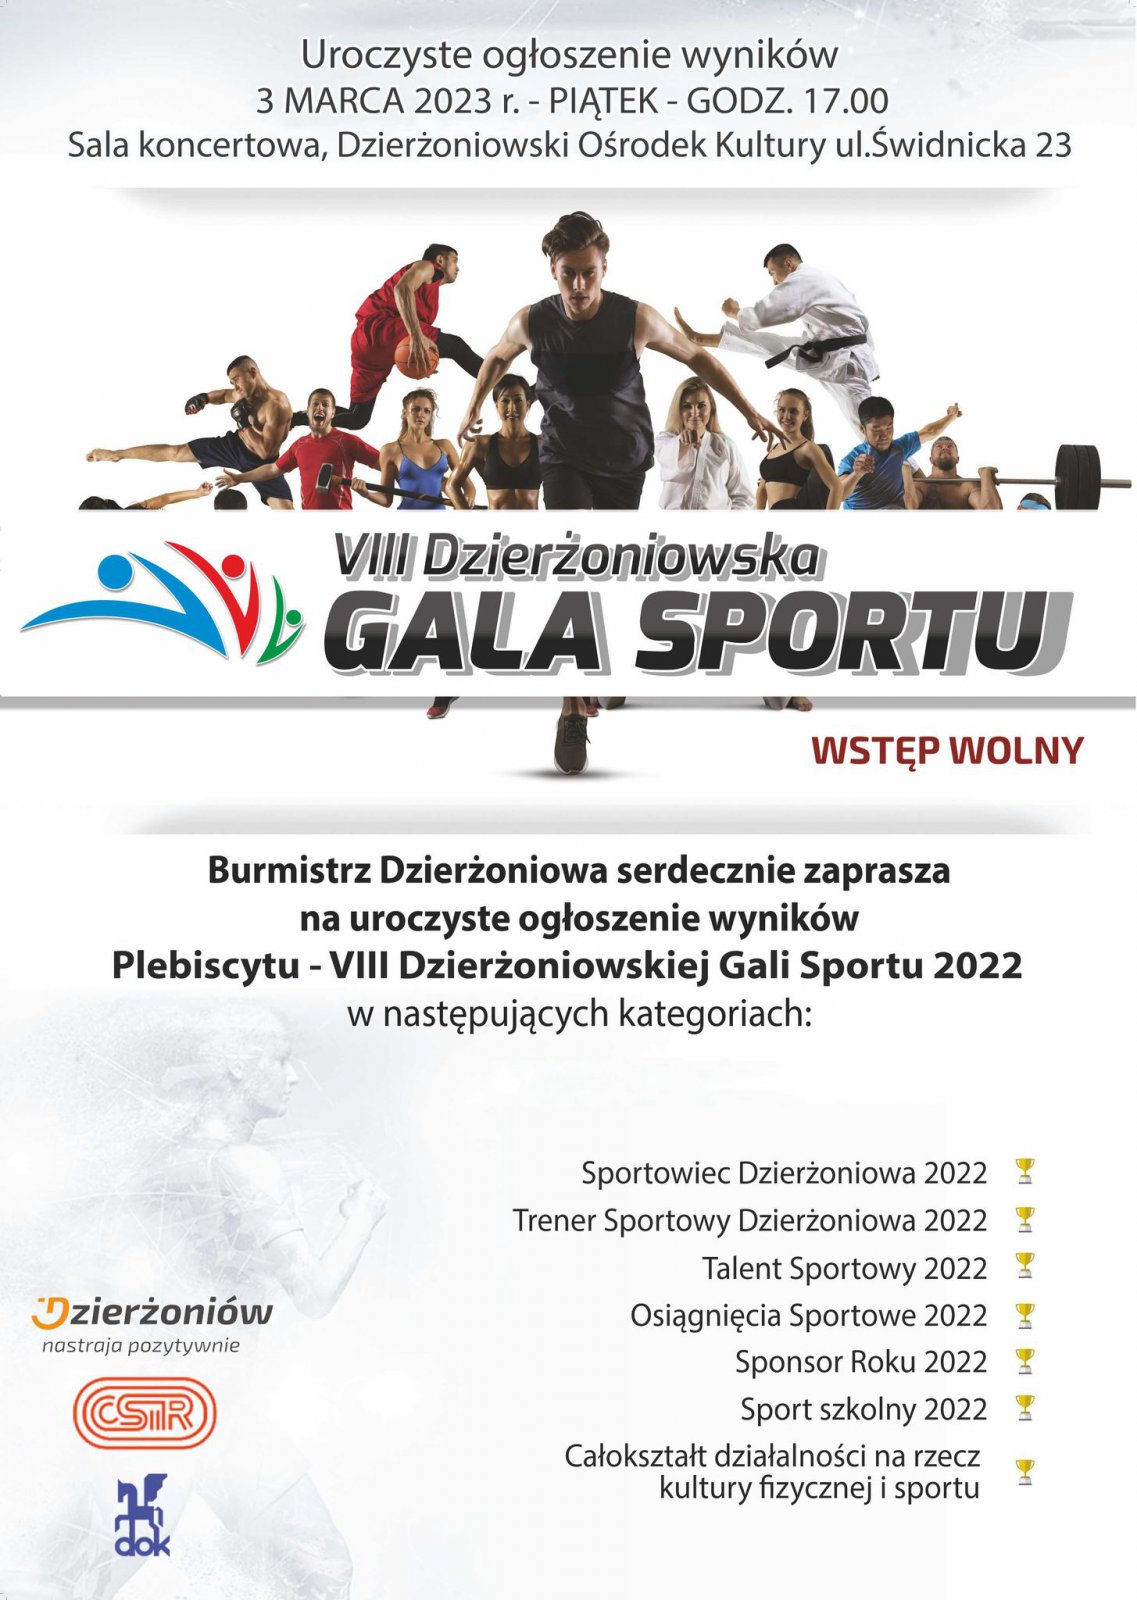 Plakat ze zdjeciem sportowców i danymi zawartymi w informacji tekstowej